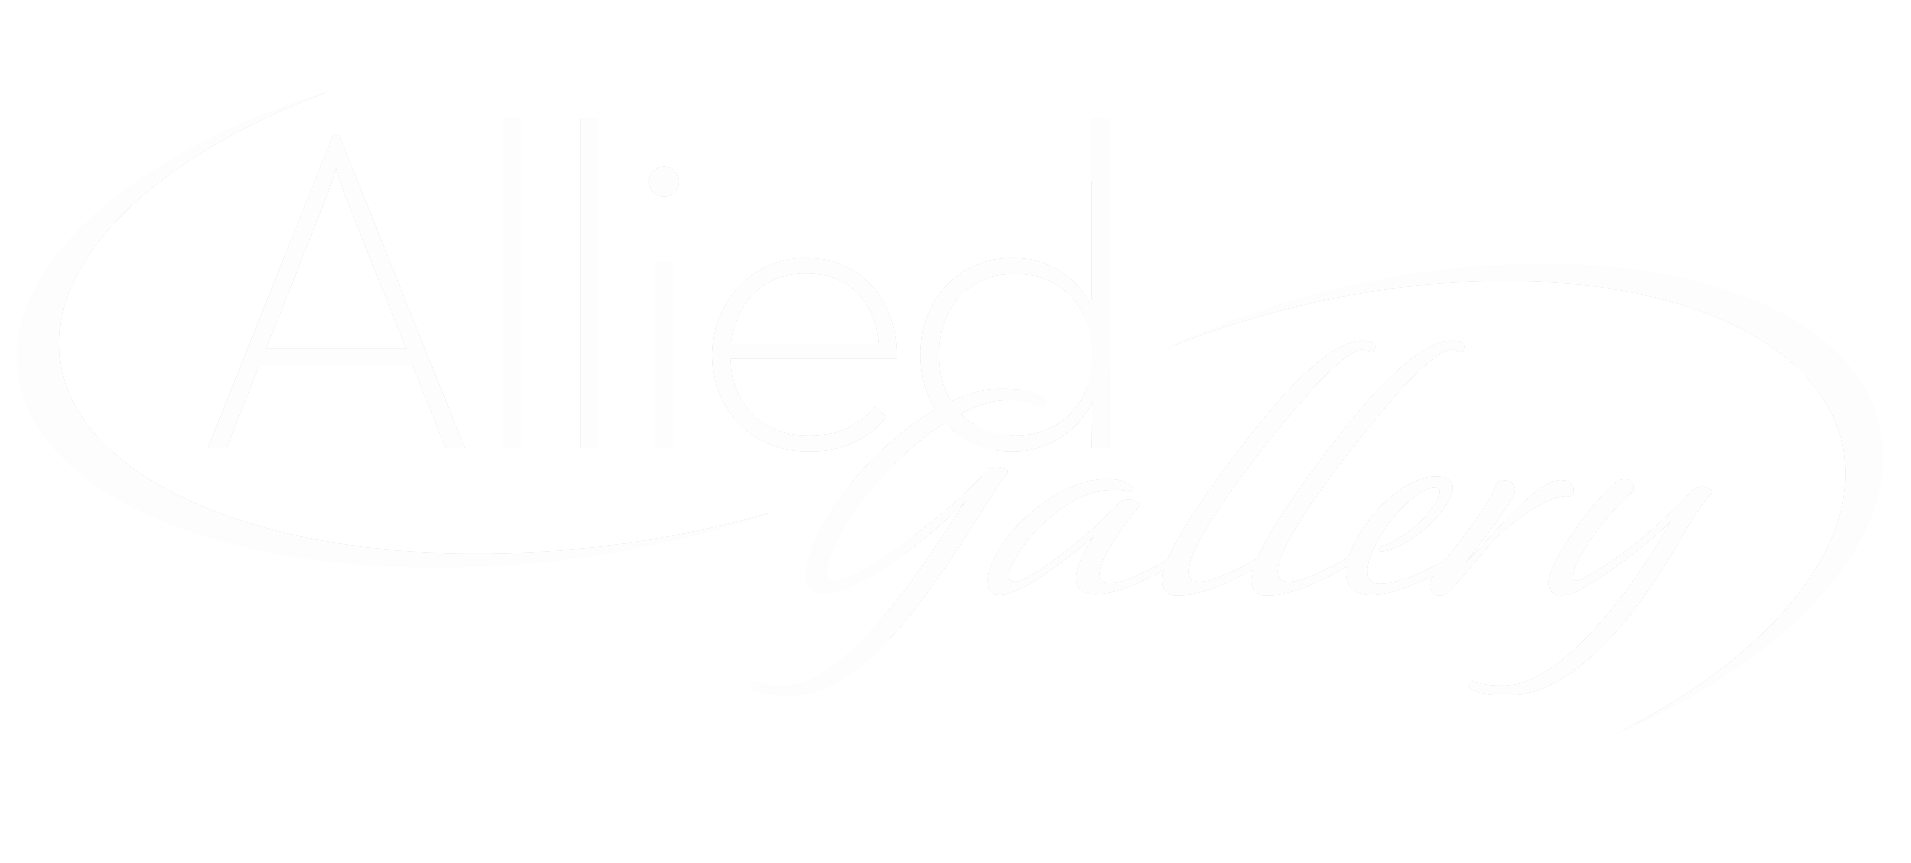 Allied Gallery logo